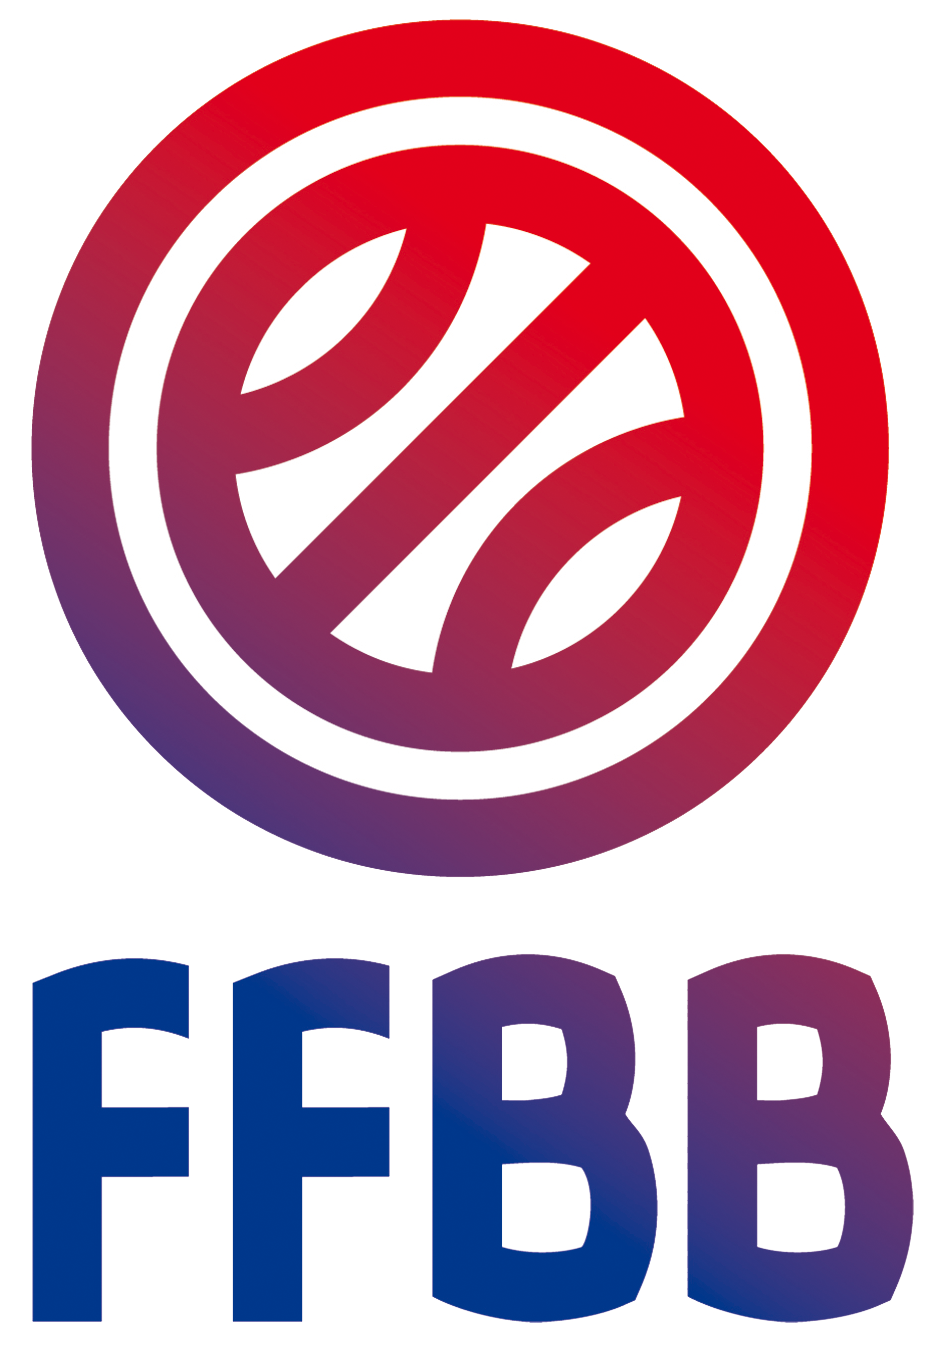 FFBB_2010_(logo).png